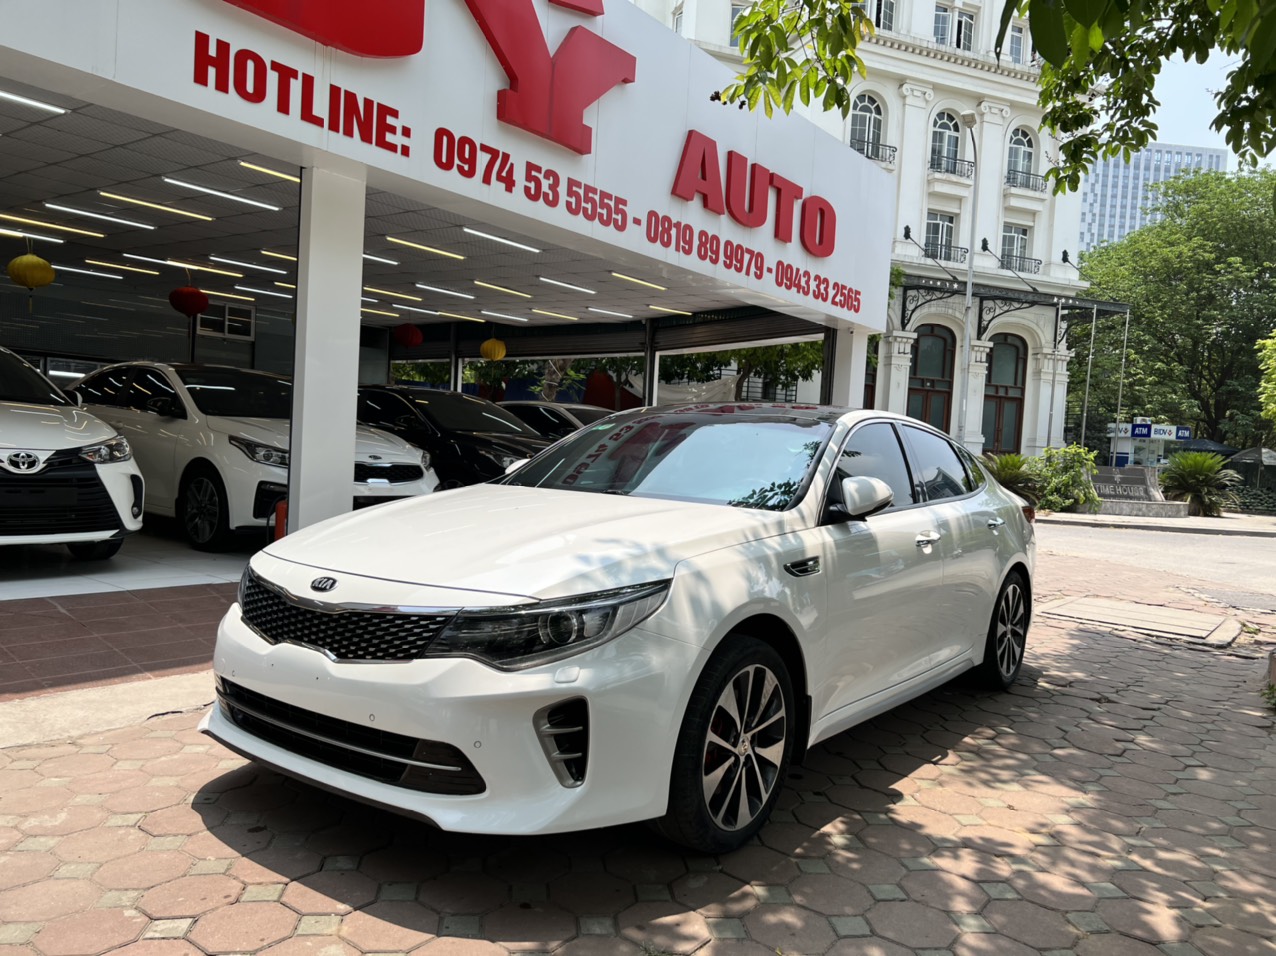 Giá bán chỉ từ 915 triệu đồng Kia Optima 2016 thách thức Toyota Camry và  Mazda6